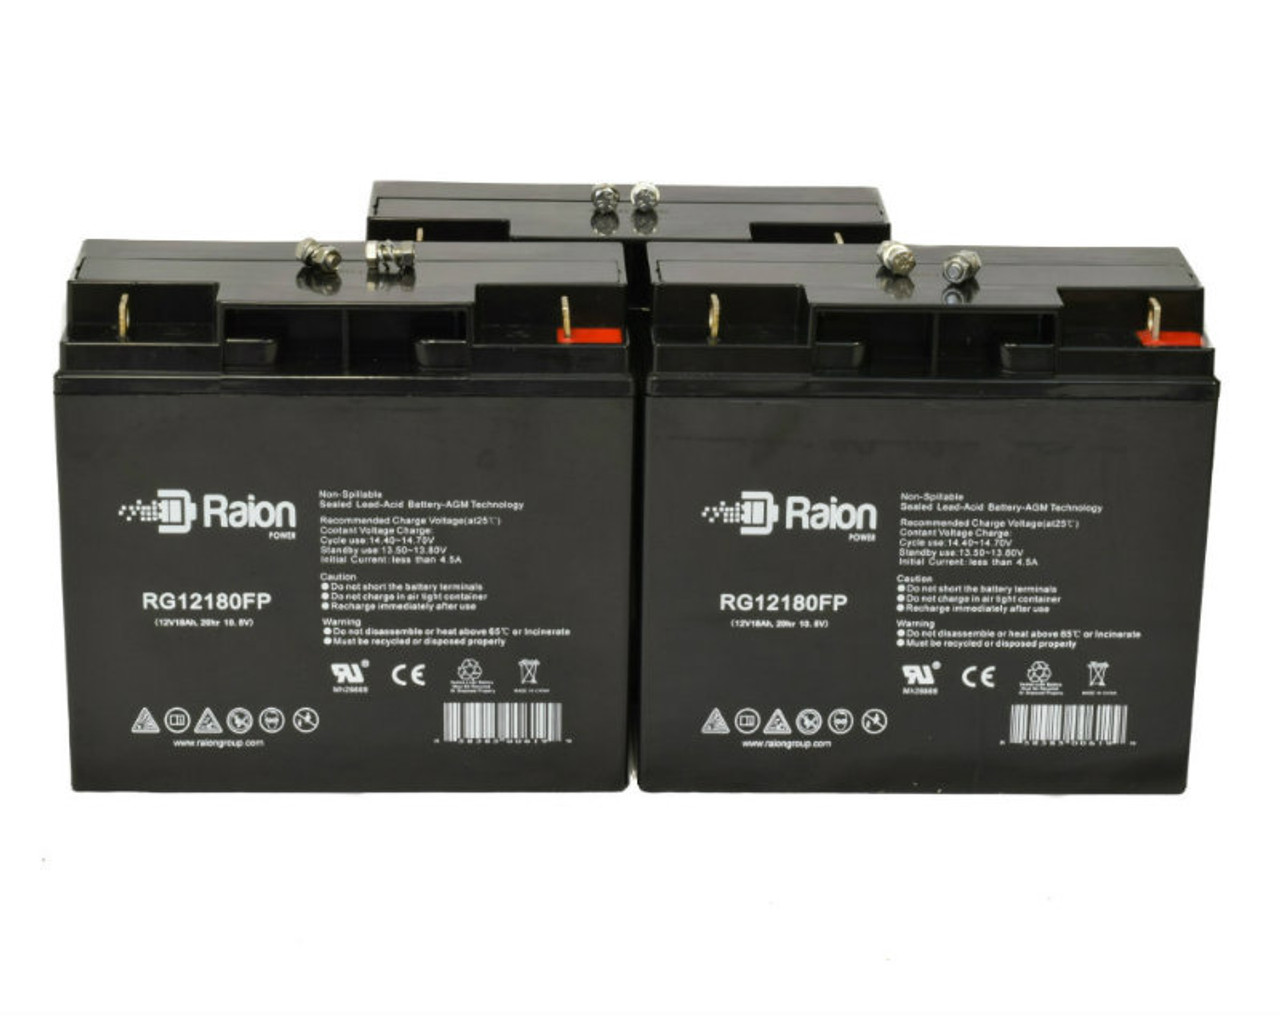 Raion Power Replacement 12V 18Ah Battery for Peak PKC0AZ Jump Starter 450 - 3 Pack